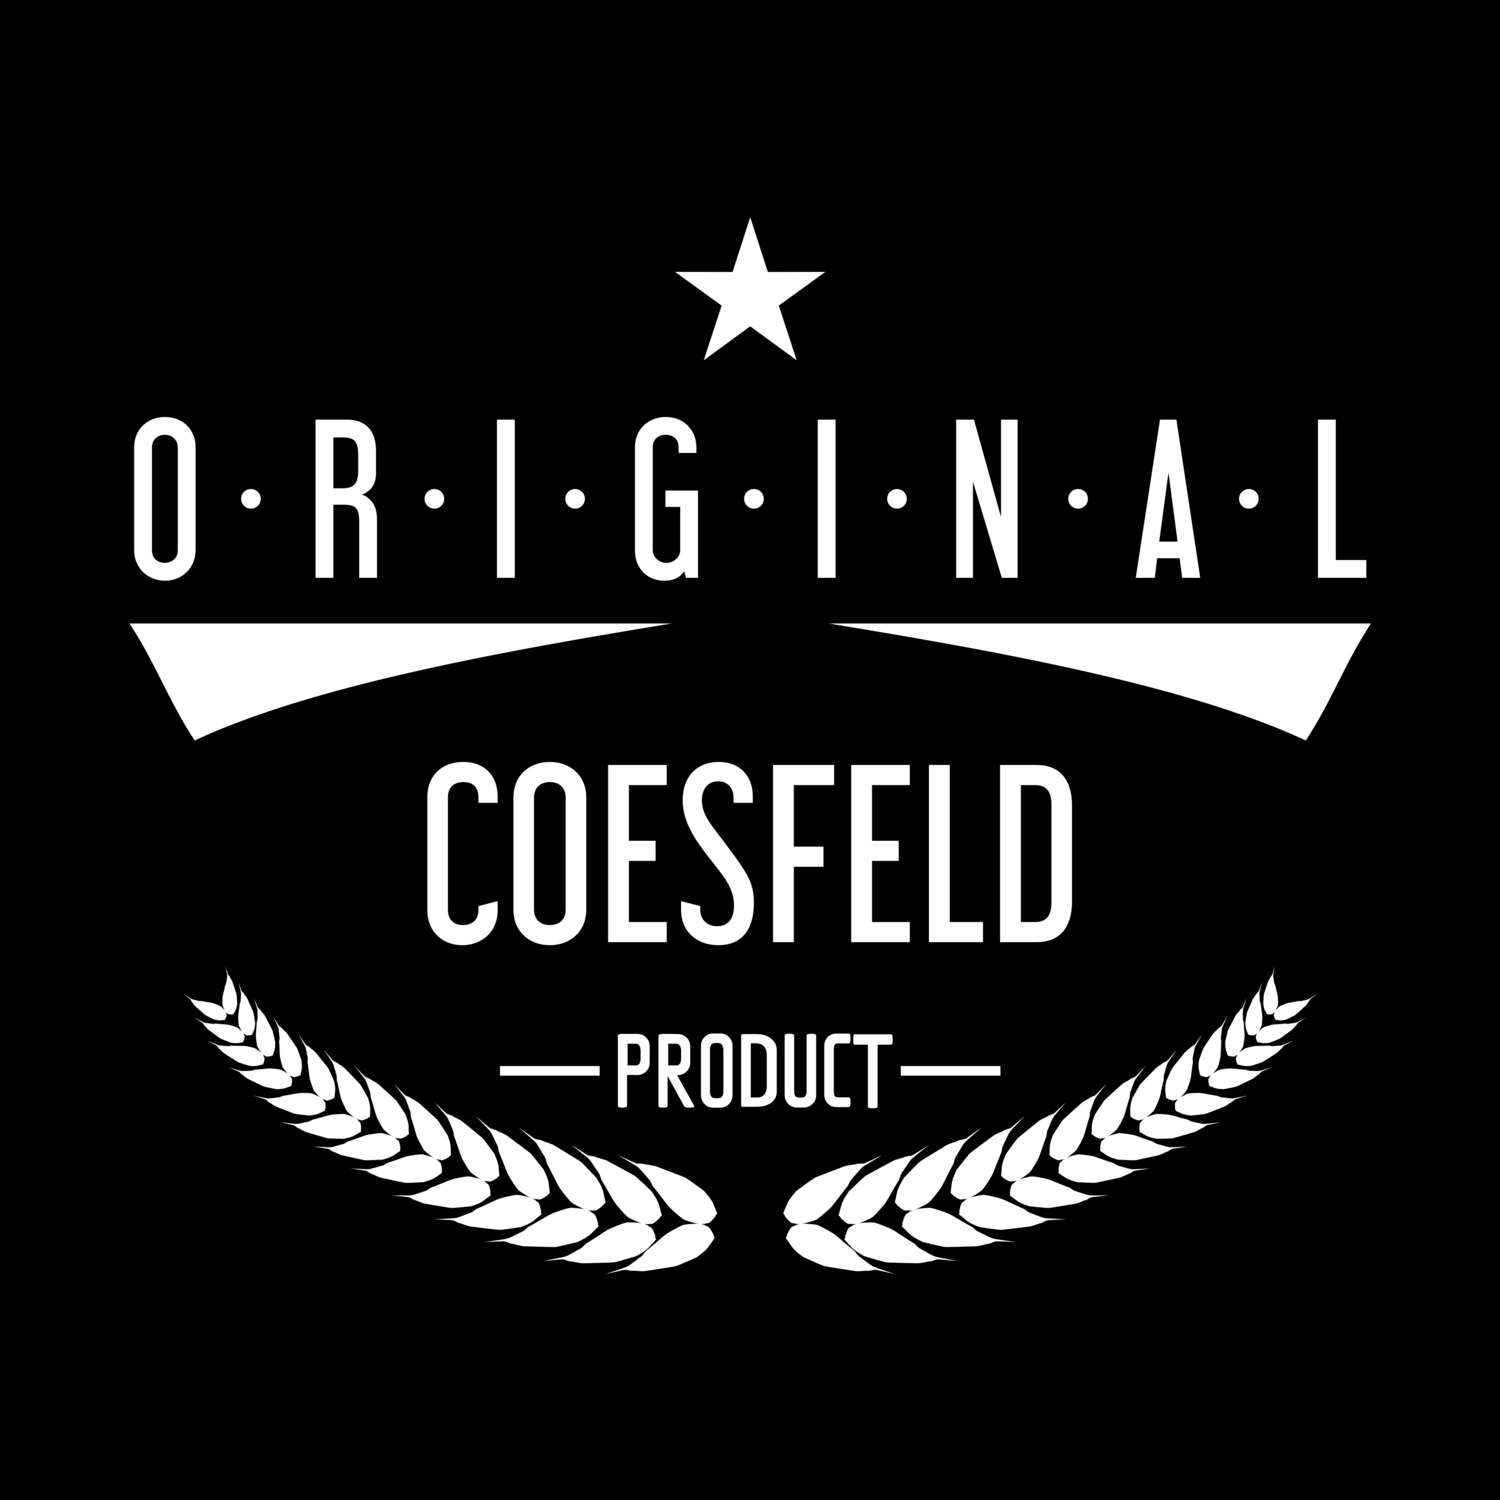 Coesfeld T-Shirt »Original Product«